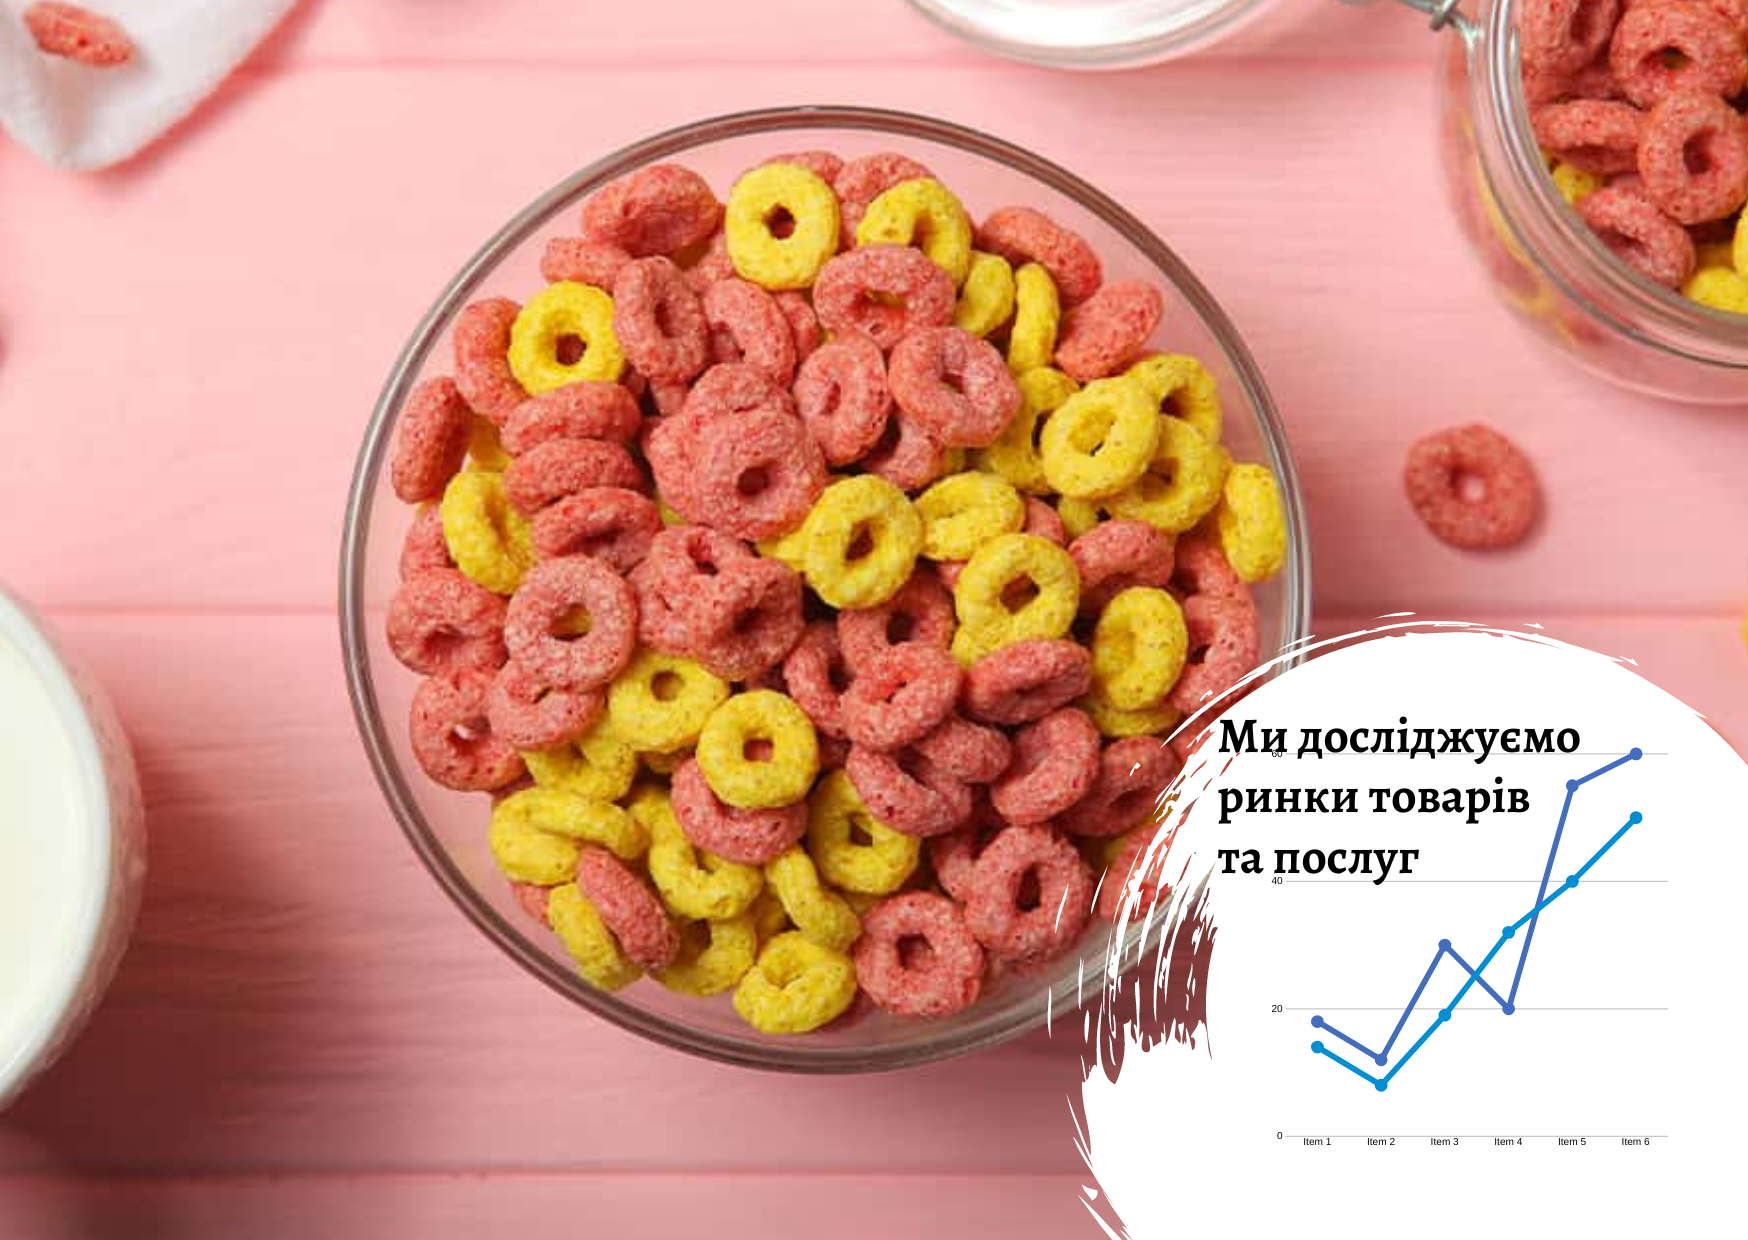 Рынок сухих завтраков в Украине: факторы роста спроса